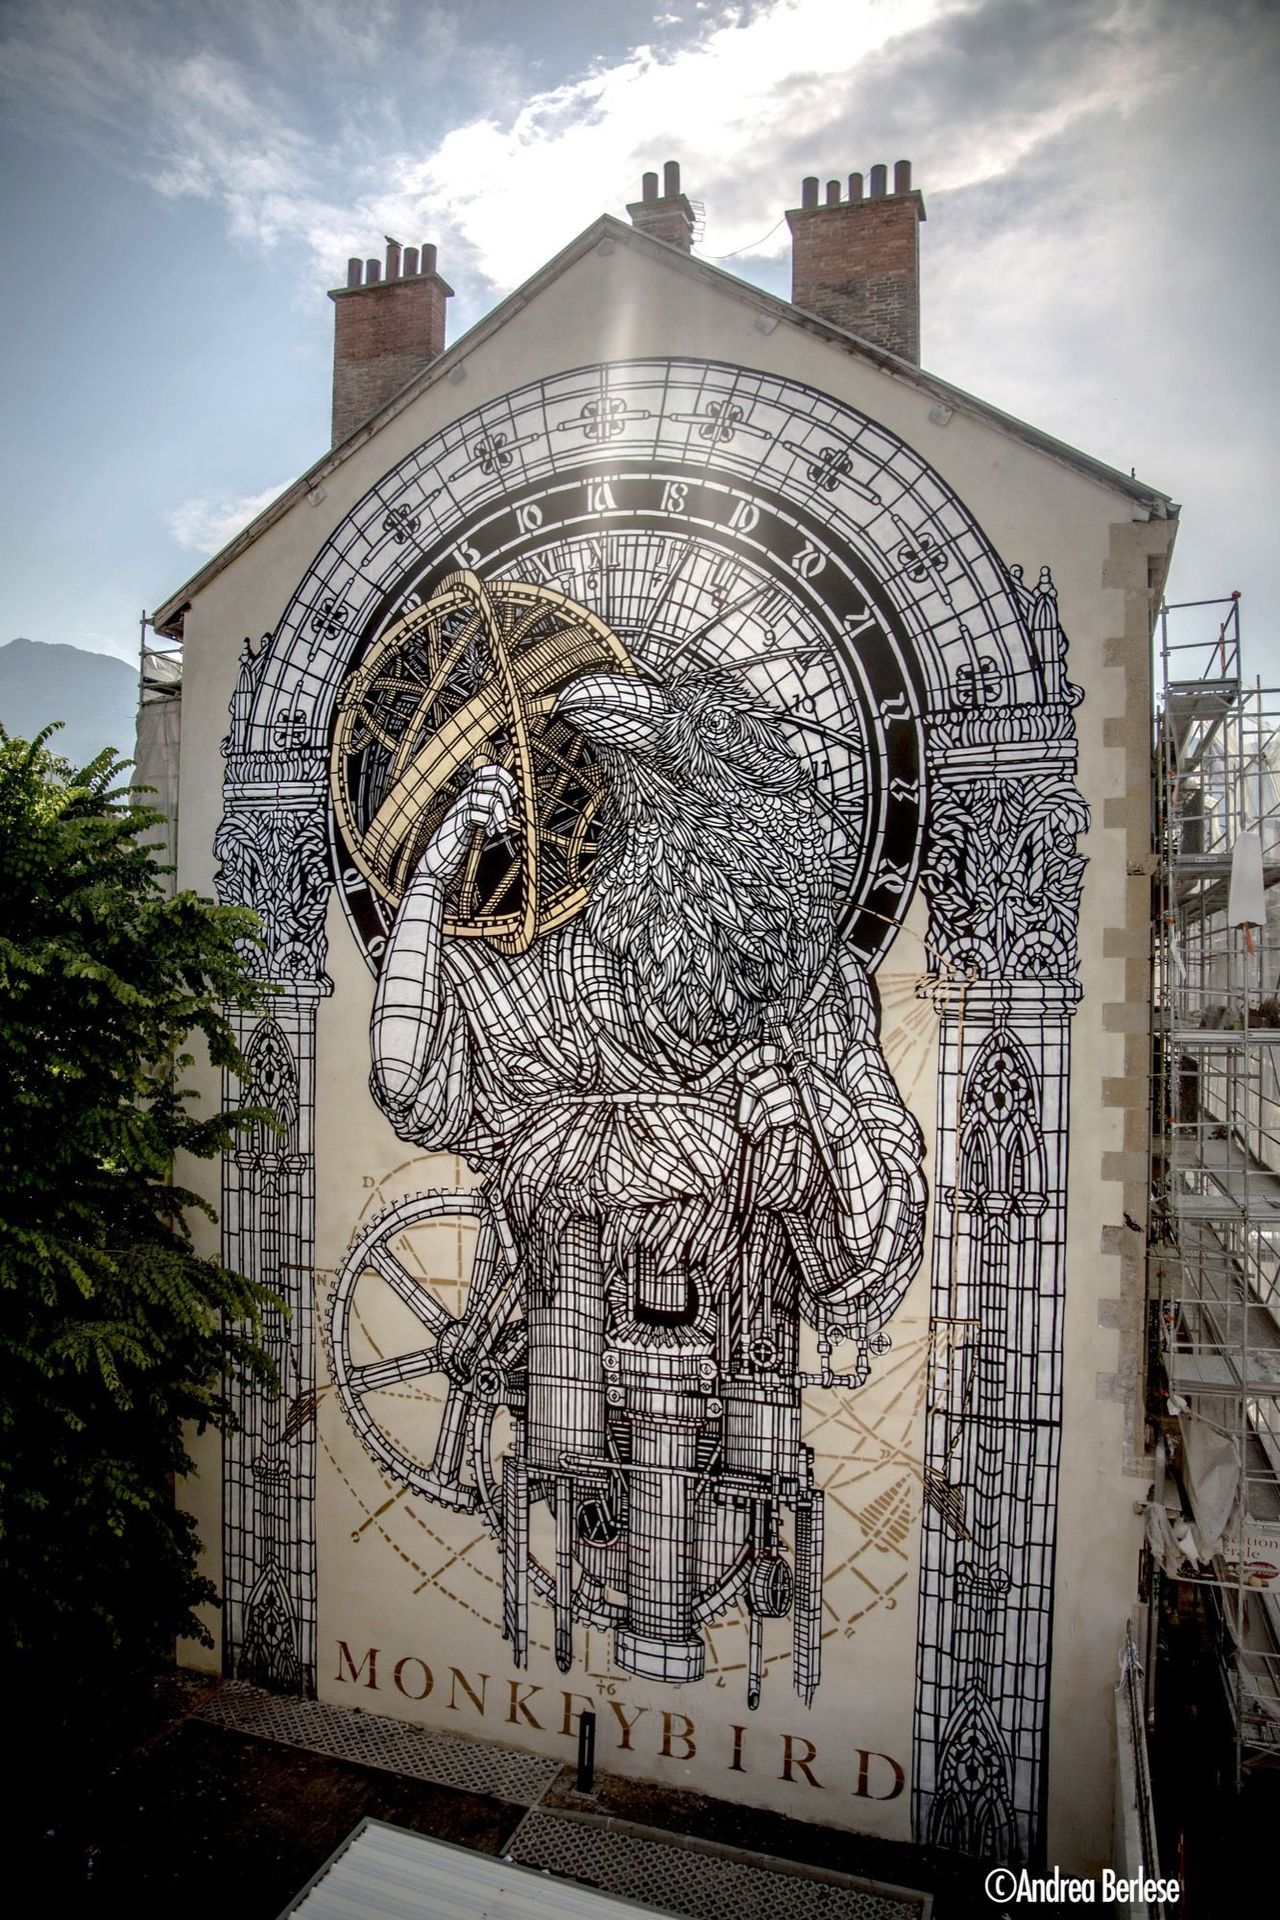 Monkeybird in Grenoble, France#streetart #mural #graffiti #art https://t.co/n6Wt5tr5Xj